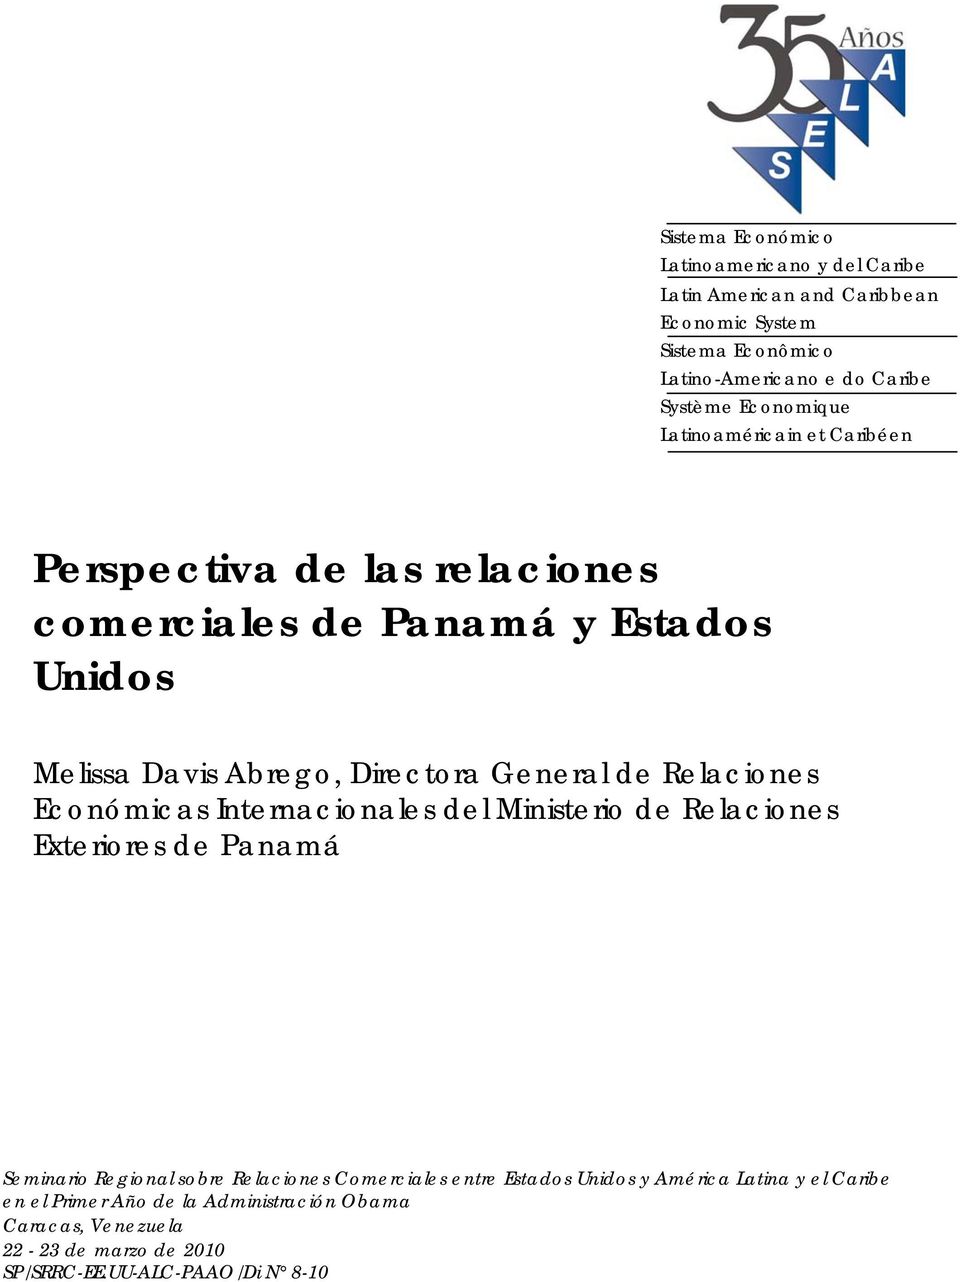 Relaciones Económicas Internacionales del Ministerio de Relaciones Exteriores de Panamá Seminario Regional sobre Relaciones Comerciales entre Estados